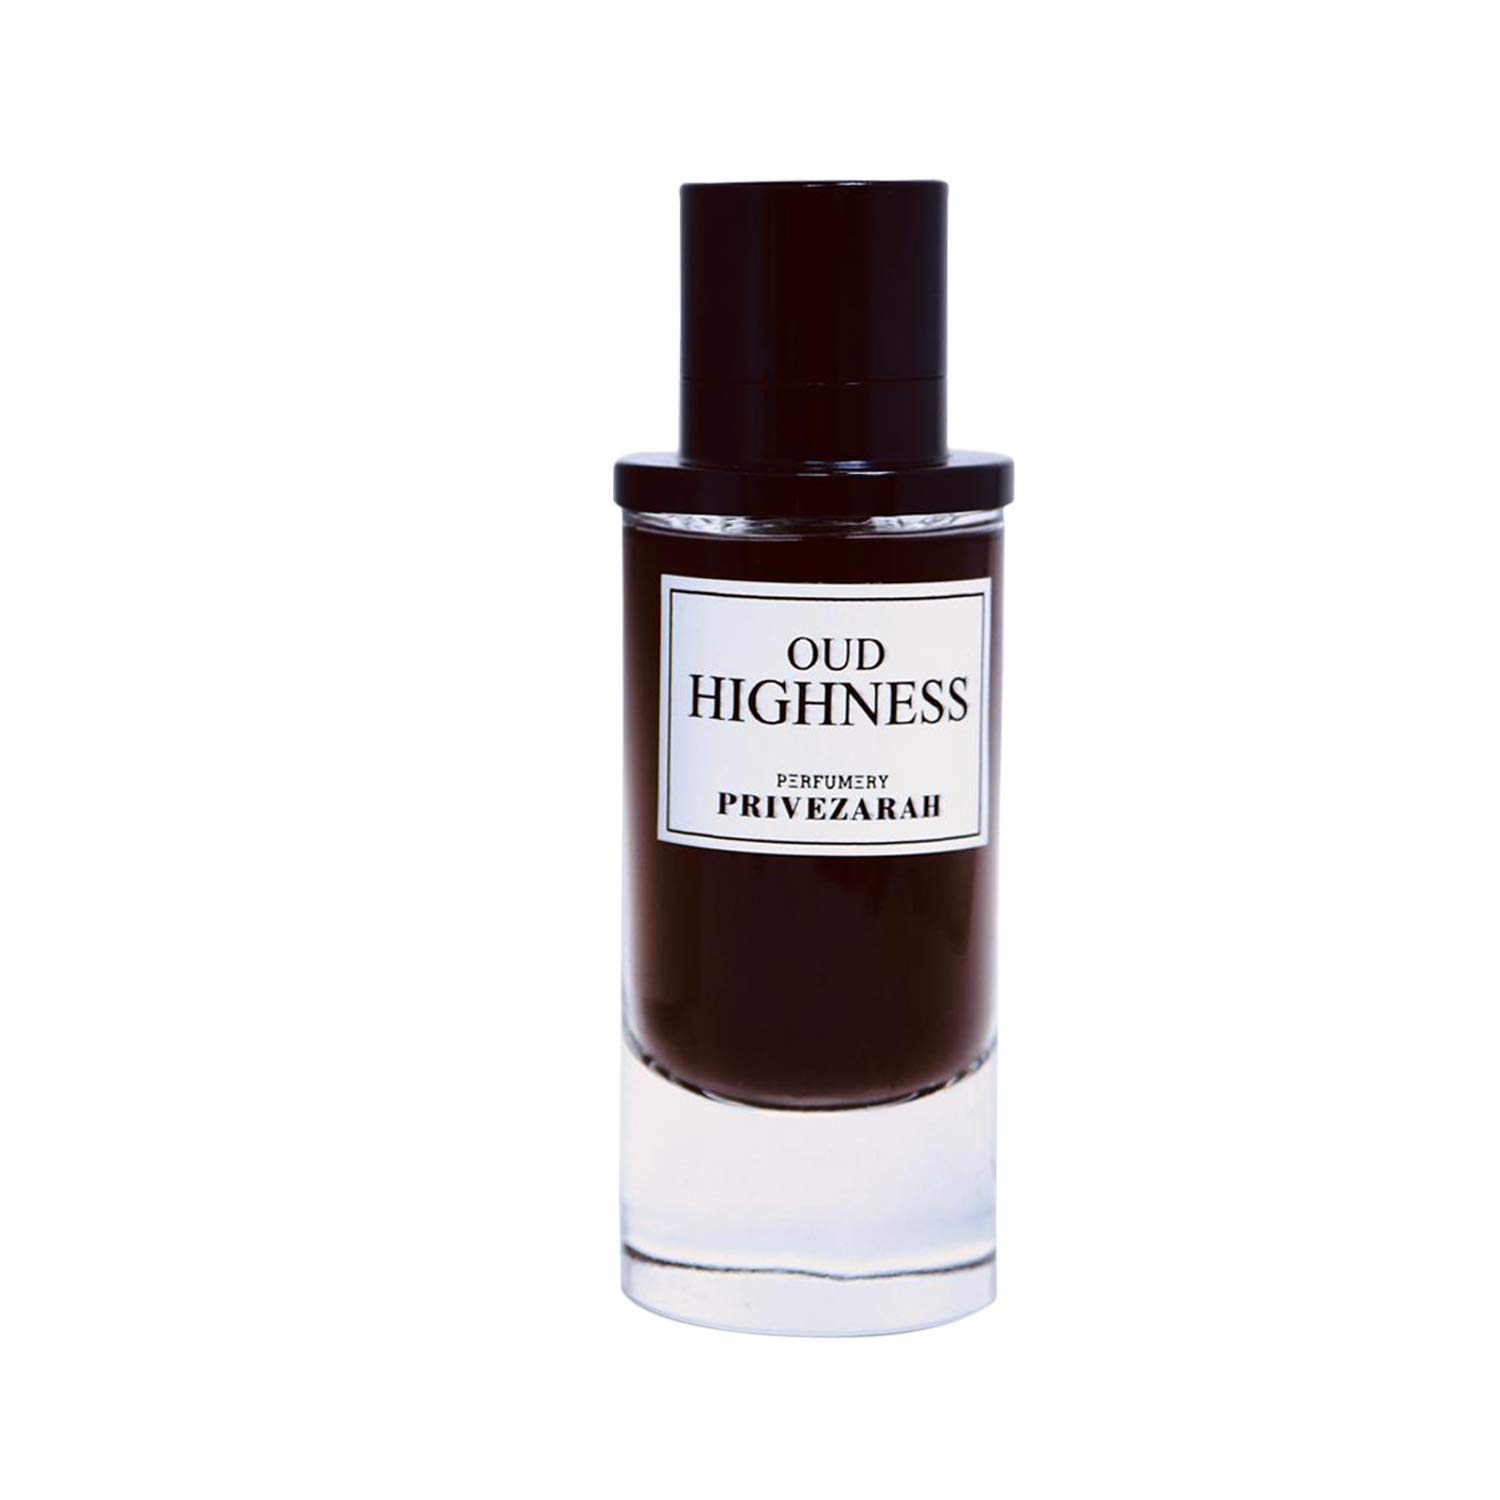 Oud for Men Prive Zarah Oud Highness UNISEX EDP Perfume for Men and Women Fragrance Scent 80ml – PARIS CORNER PERFUMES